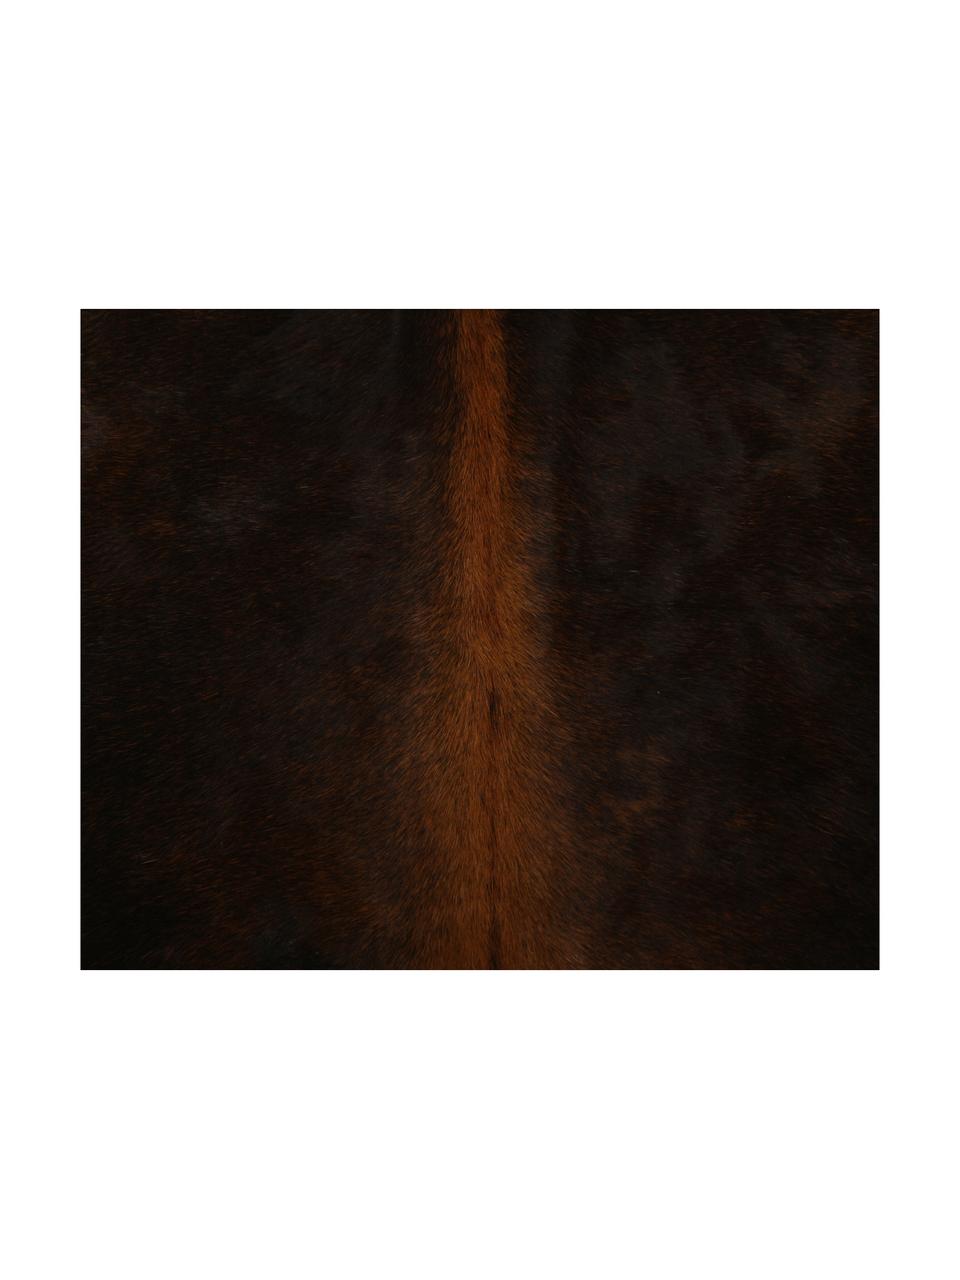 Dywan ze skóry bydlęcej Aquarius, Skóra bydlęca, Ciemny brązowy, Unikatowa skóra bydlęca 940, 160 x 180 cm